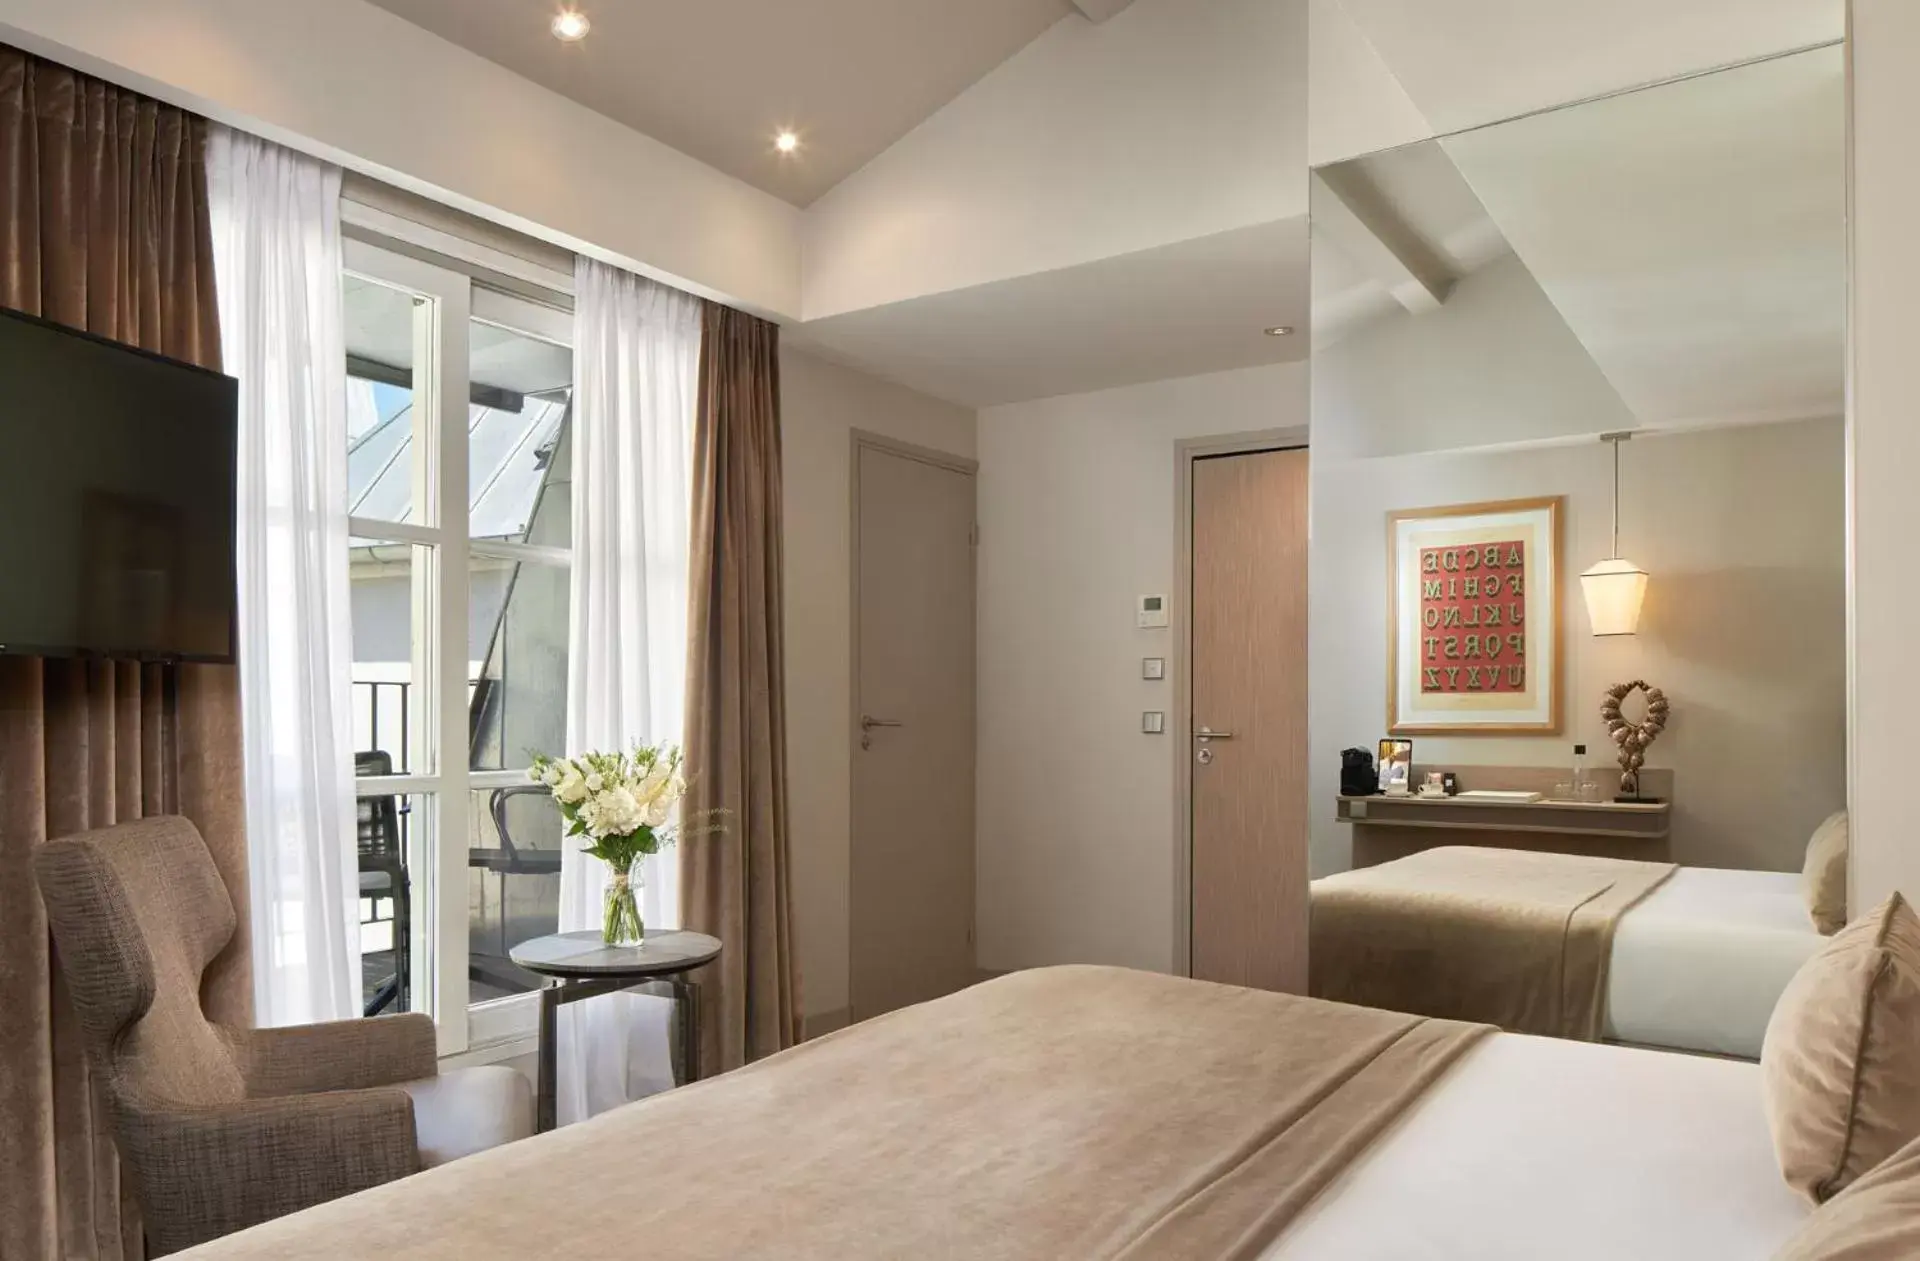 Bed in Hotel La Lanterne & Spa